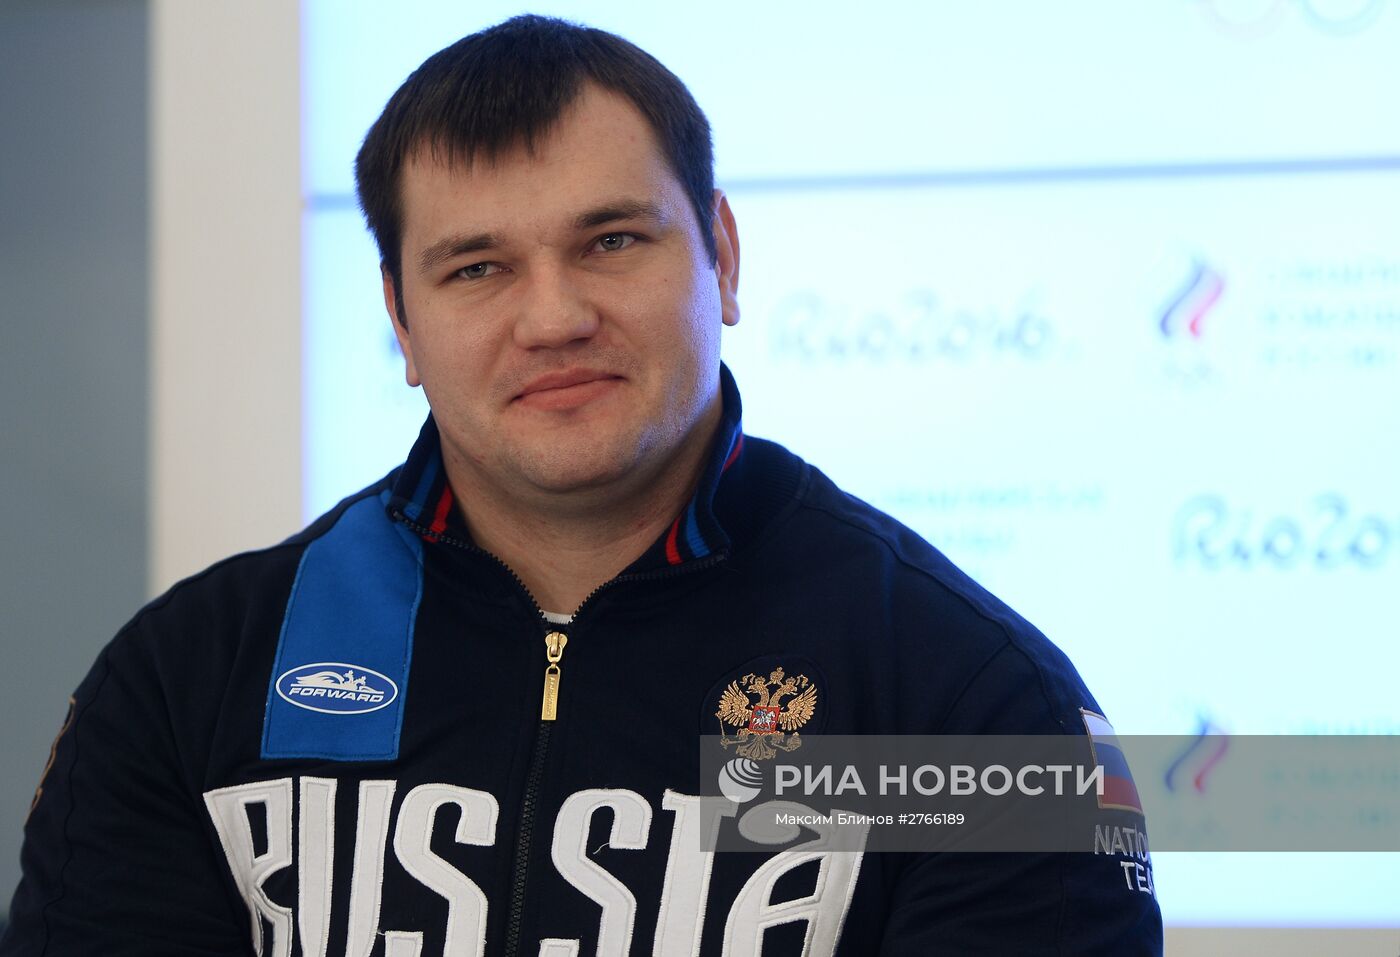 Пресс-конференция Федерации тяжелой атлетики России